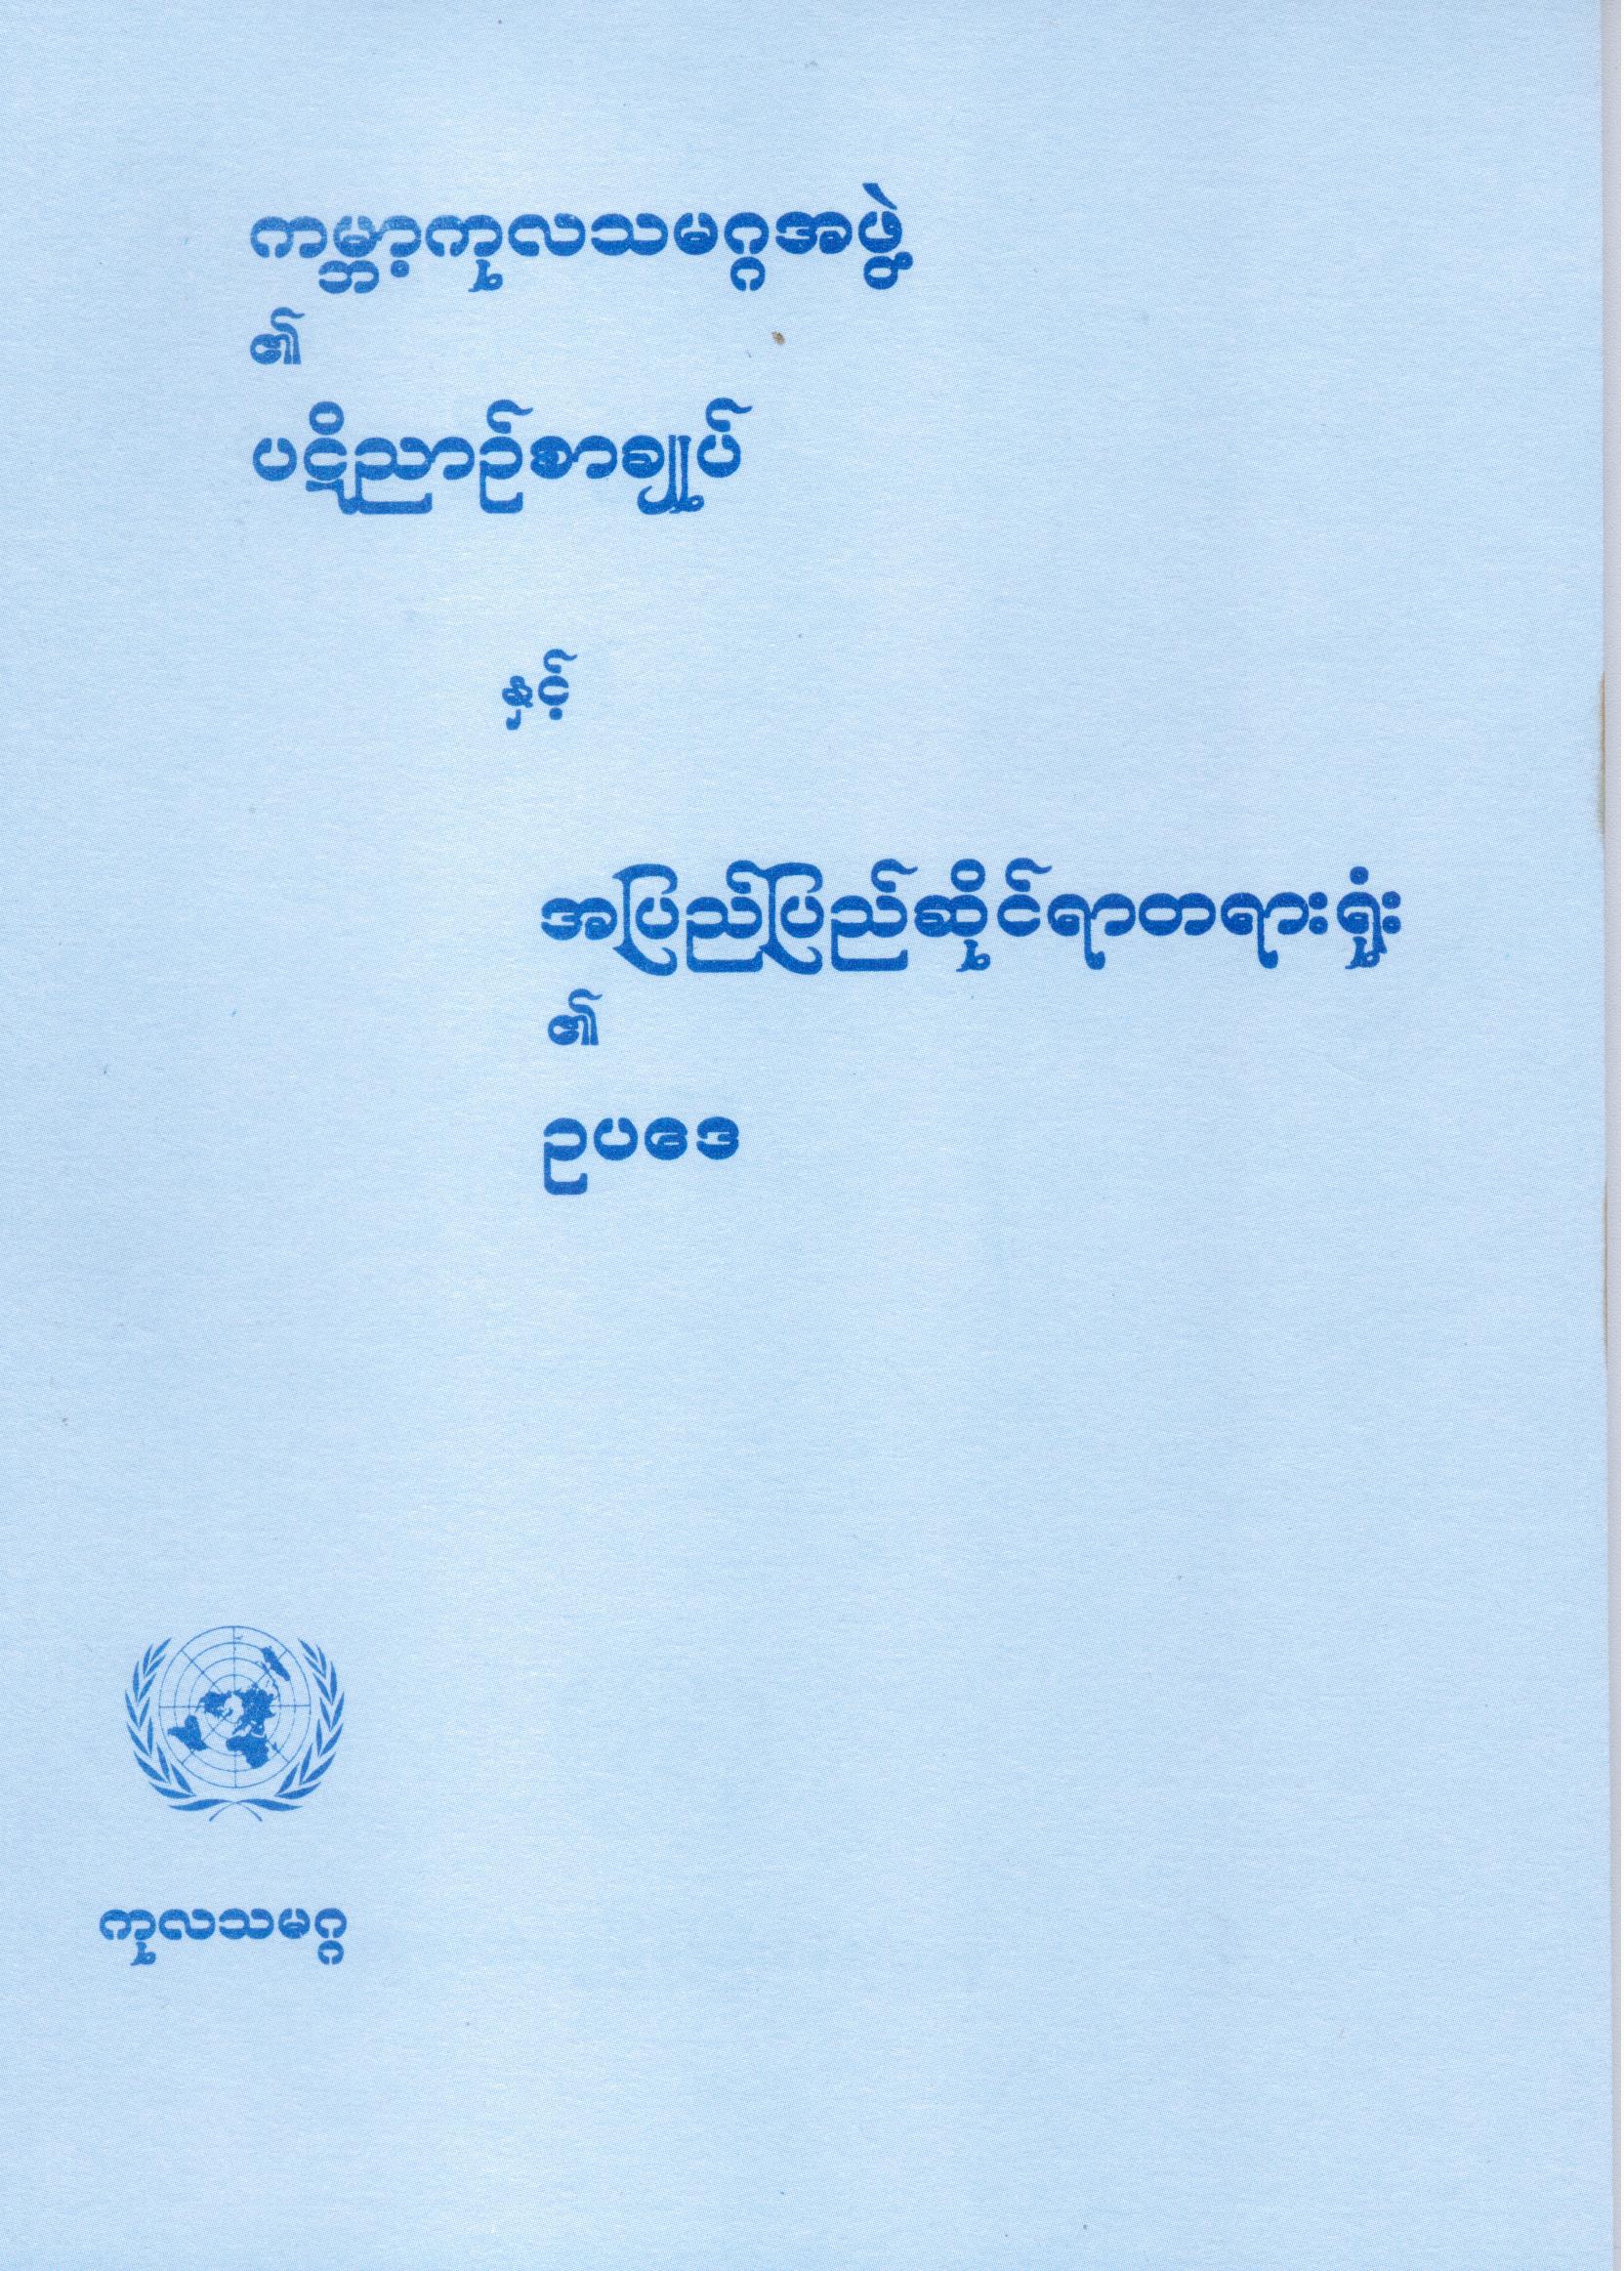 ကုလသမဂ္ဂ၏ ပဋိညာဉ်စာချုပ်နှင့် အပြည်ပြည်ဆိုင်ရာတရားရုံး၏ ဥပဒေ